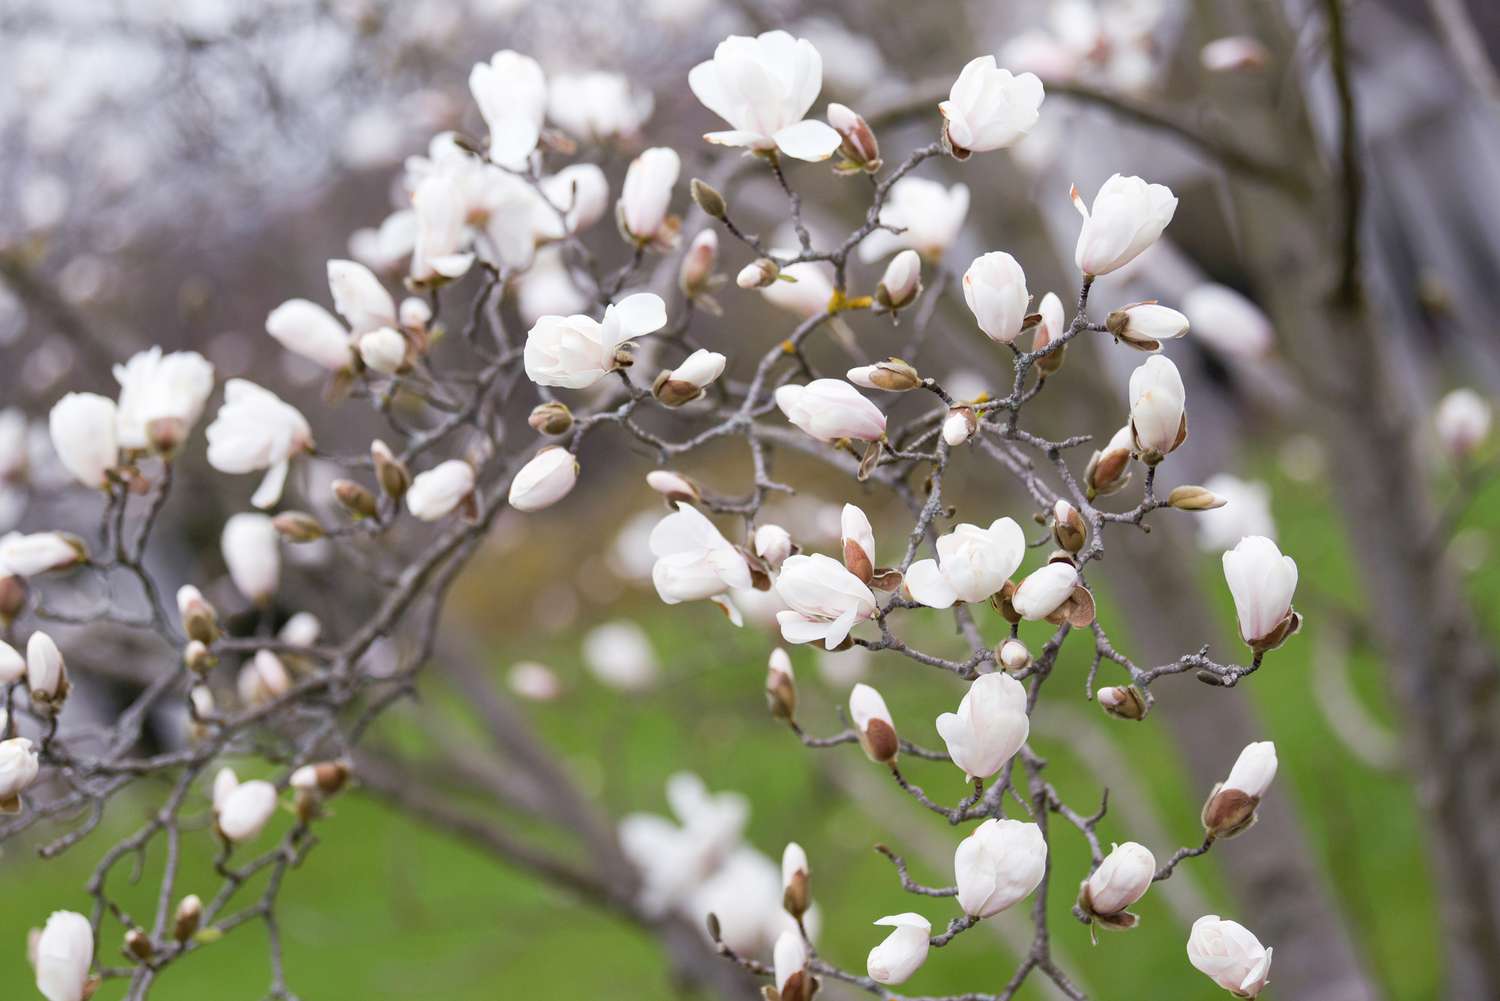 Kobus-Magnolienbaumzweig mit weißen Knospen und Blüten, der sich nach vorne erstreckt und eingerollt ist